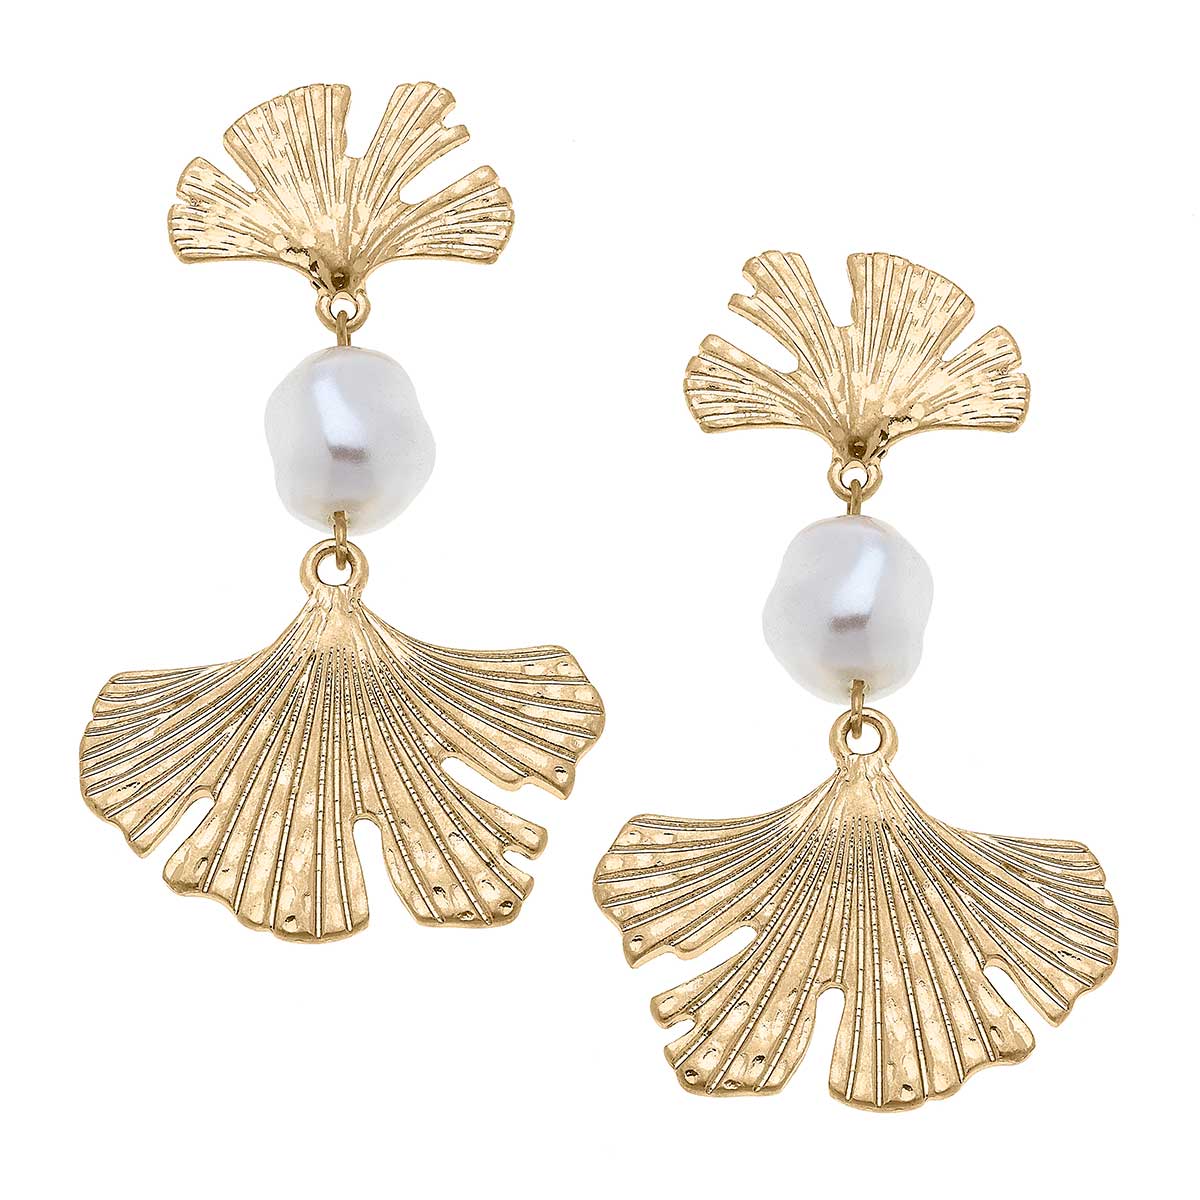 Vivy Ginkgo & Pearl Statement Earrings in Worn Gold